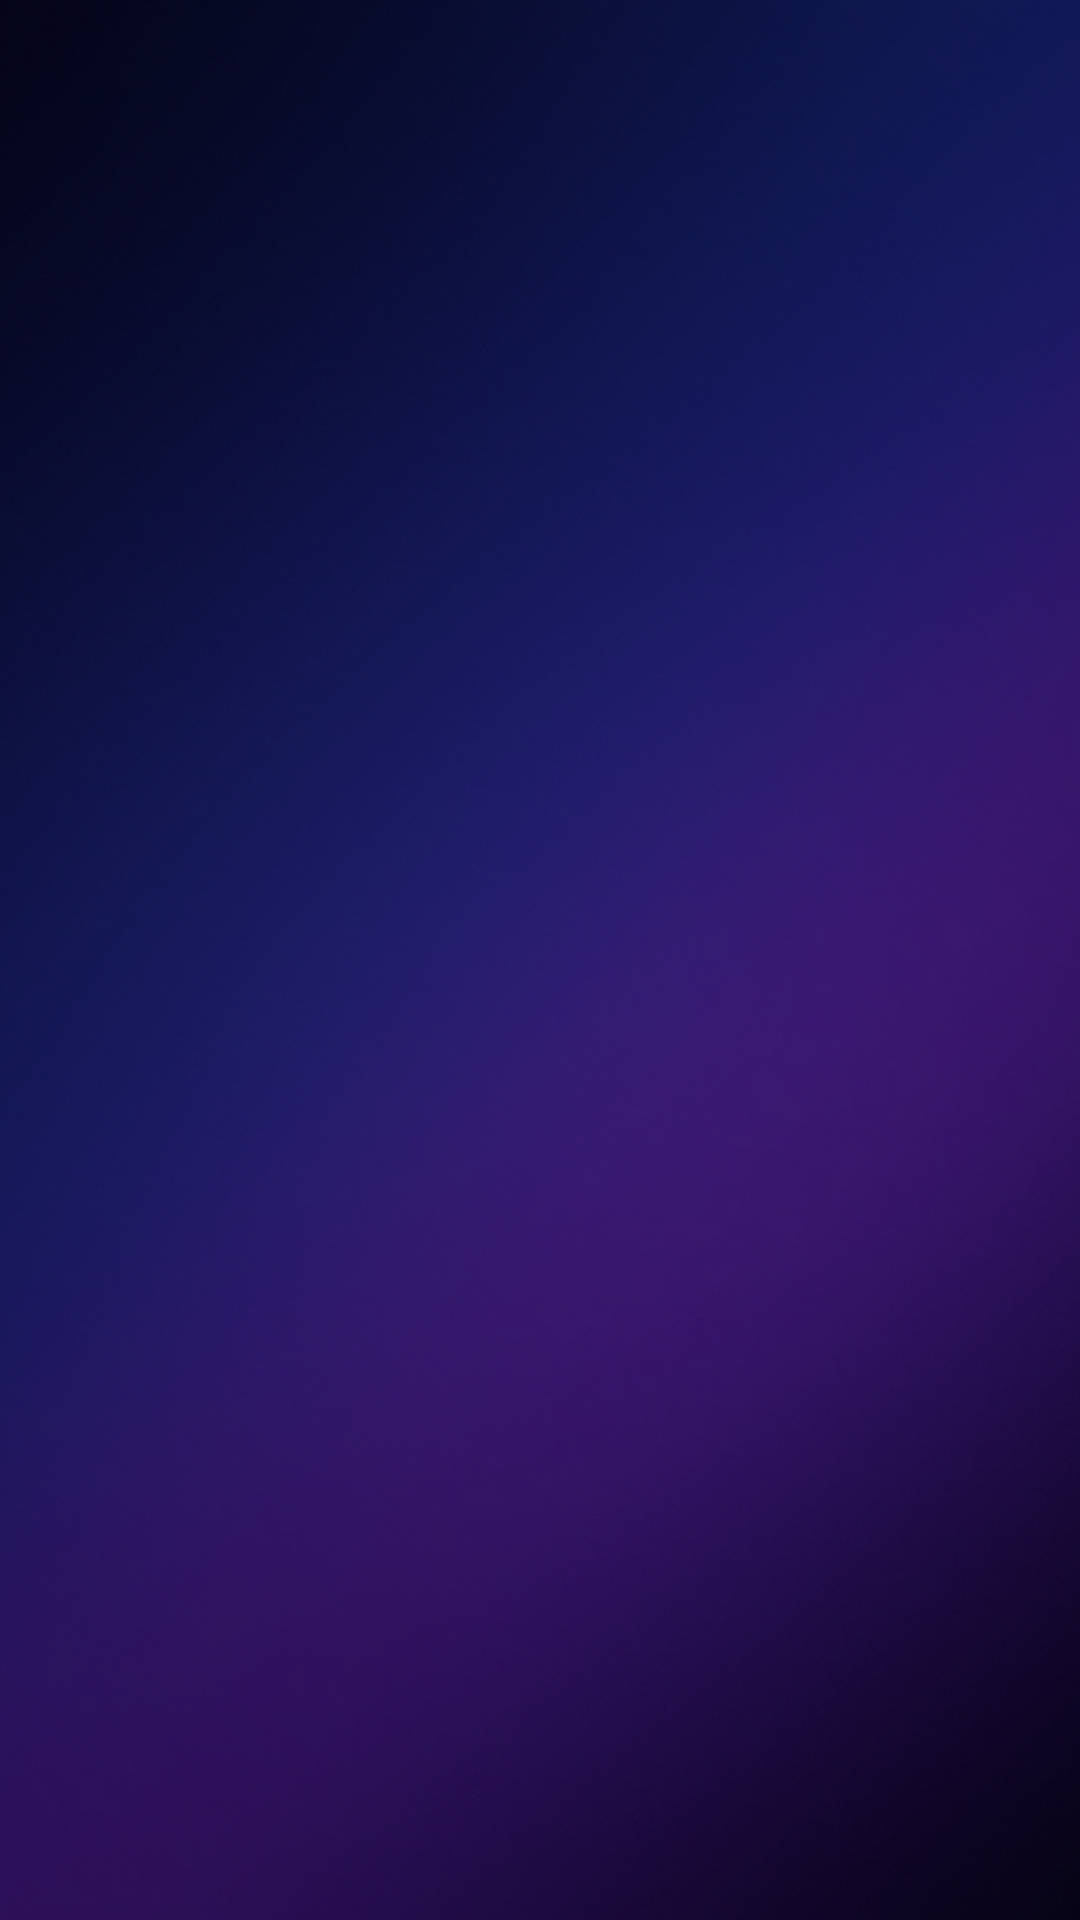 Blåoch Violett Galaxy S10 Wallpaper